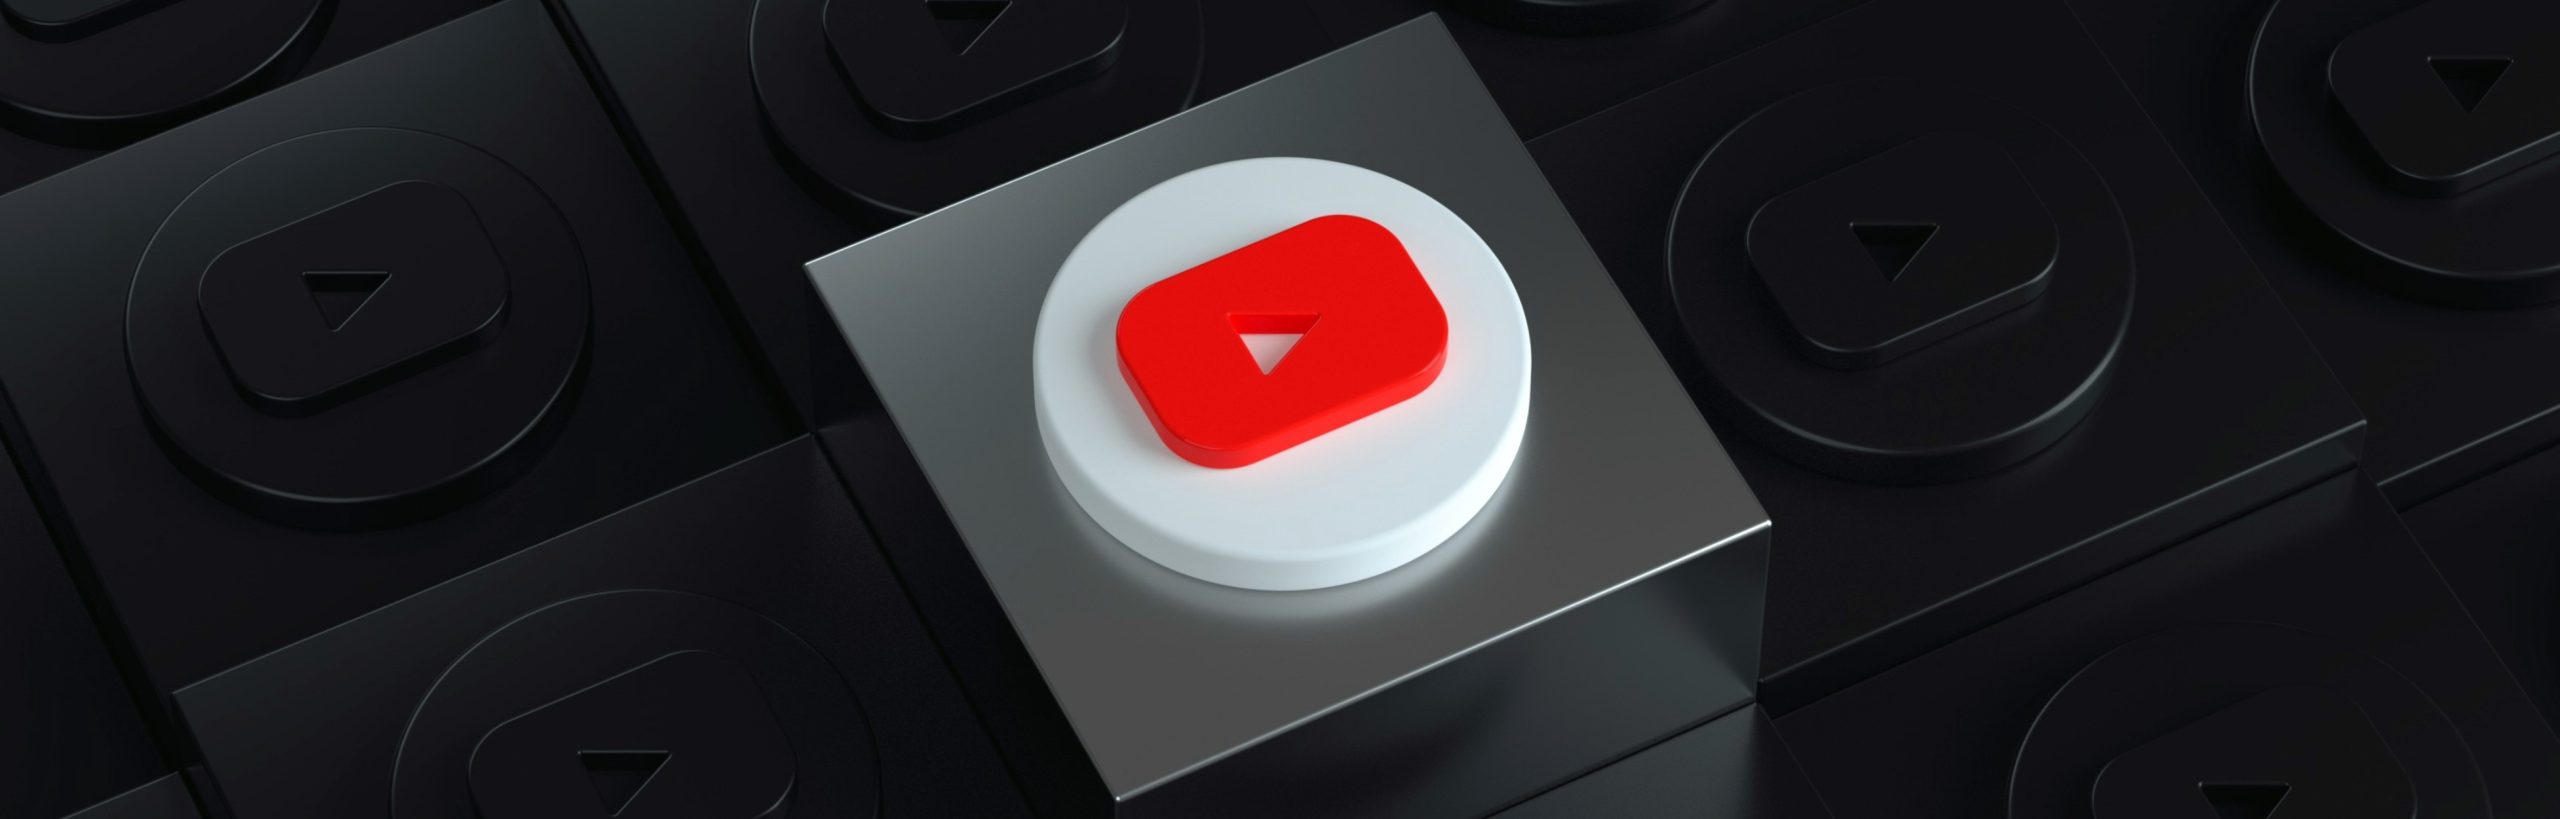 Popularidade do YouTube é alta no Brasil, mostra estudo